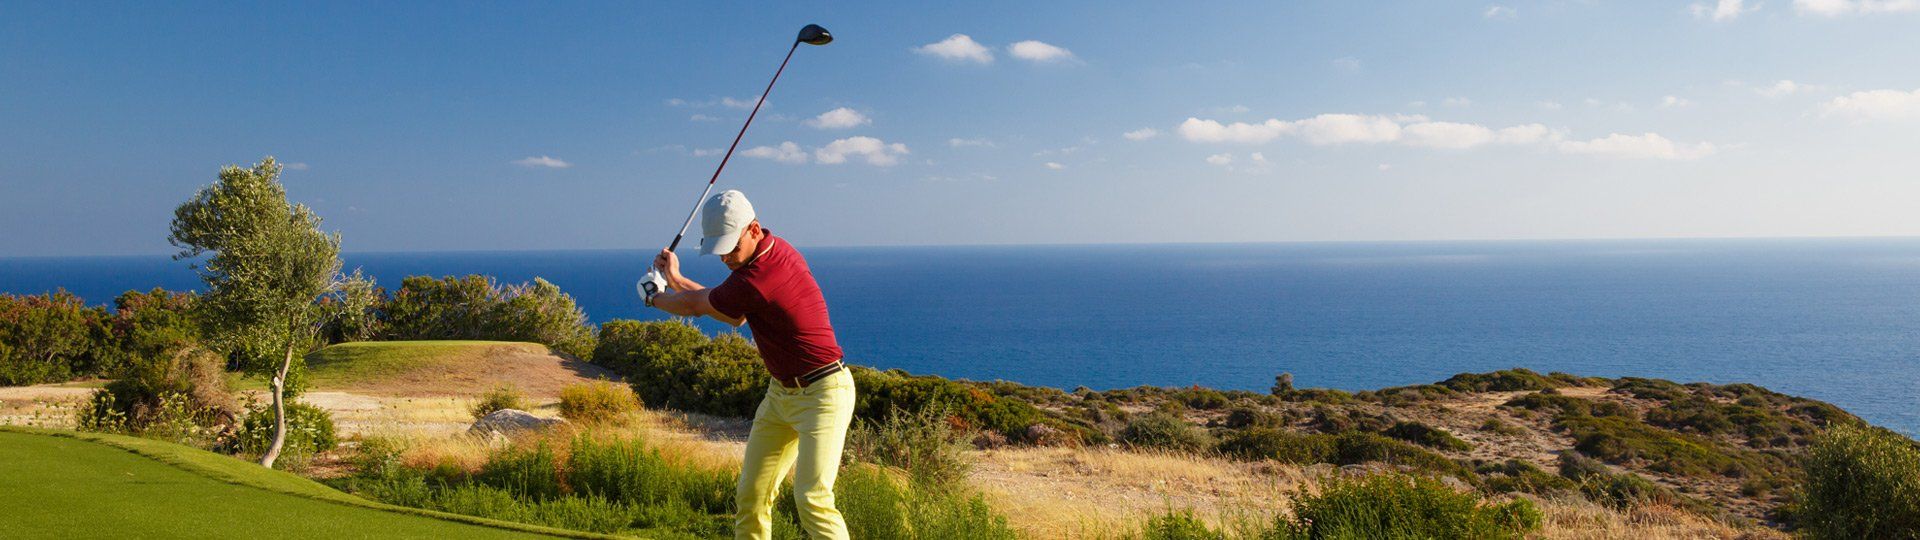 Golfspieler beim Abschlag auf Mallorca, im Hintergrund das Meer